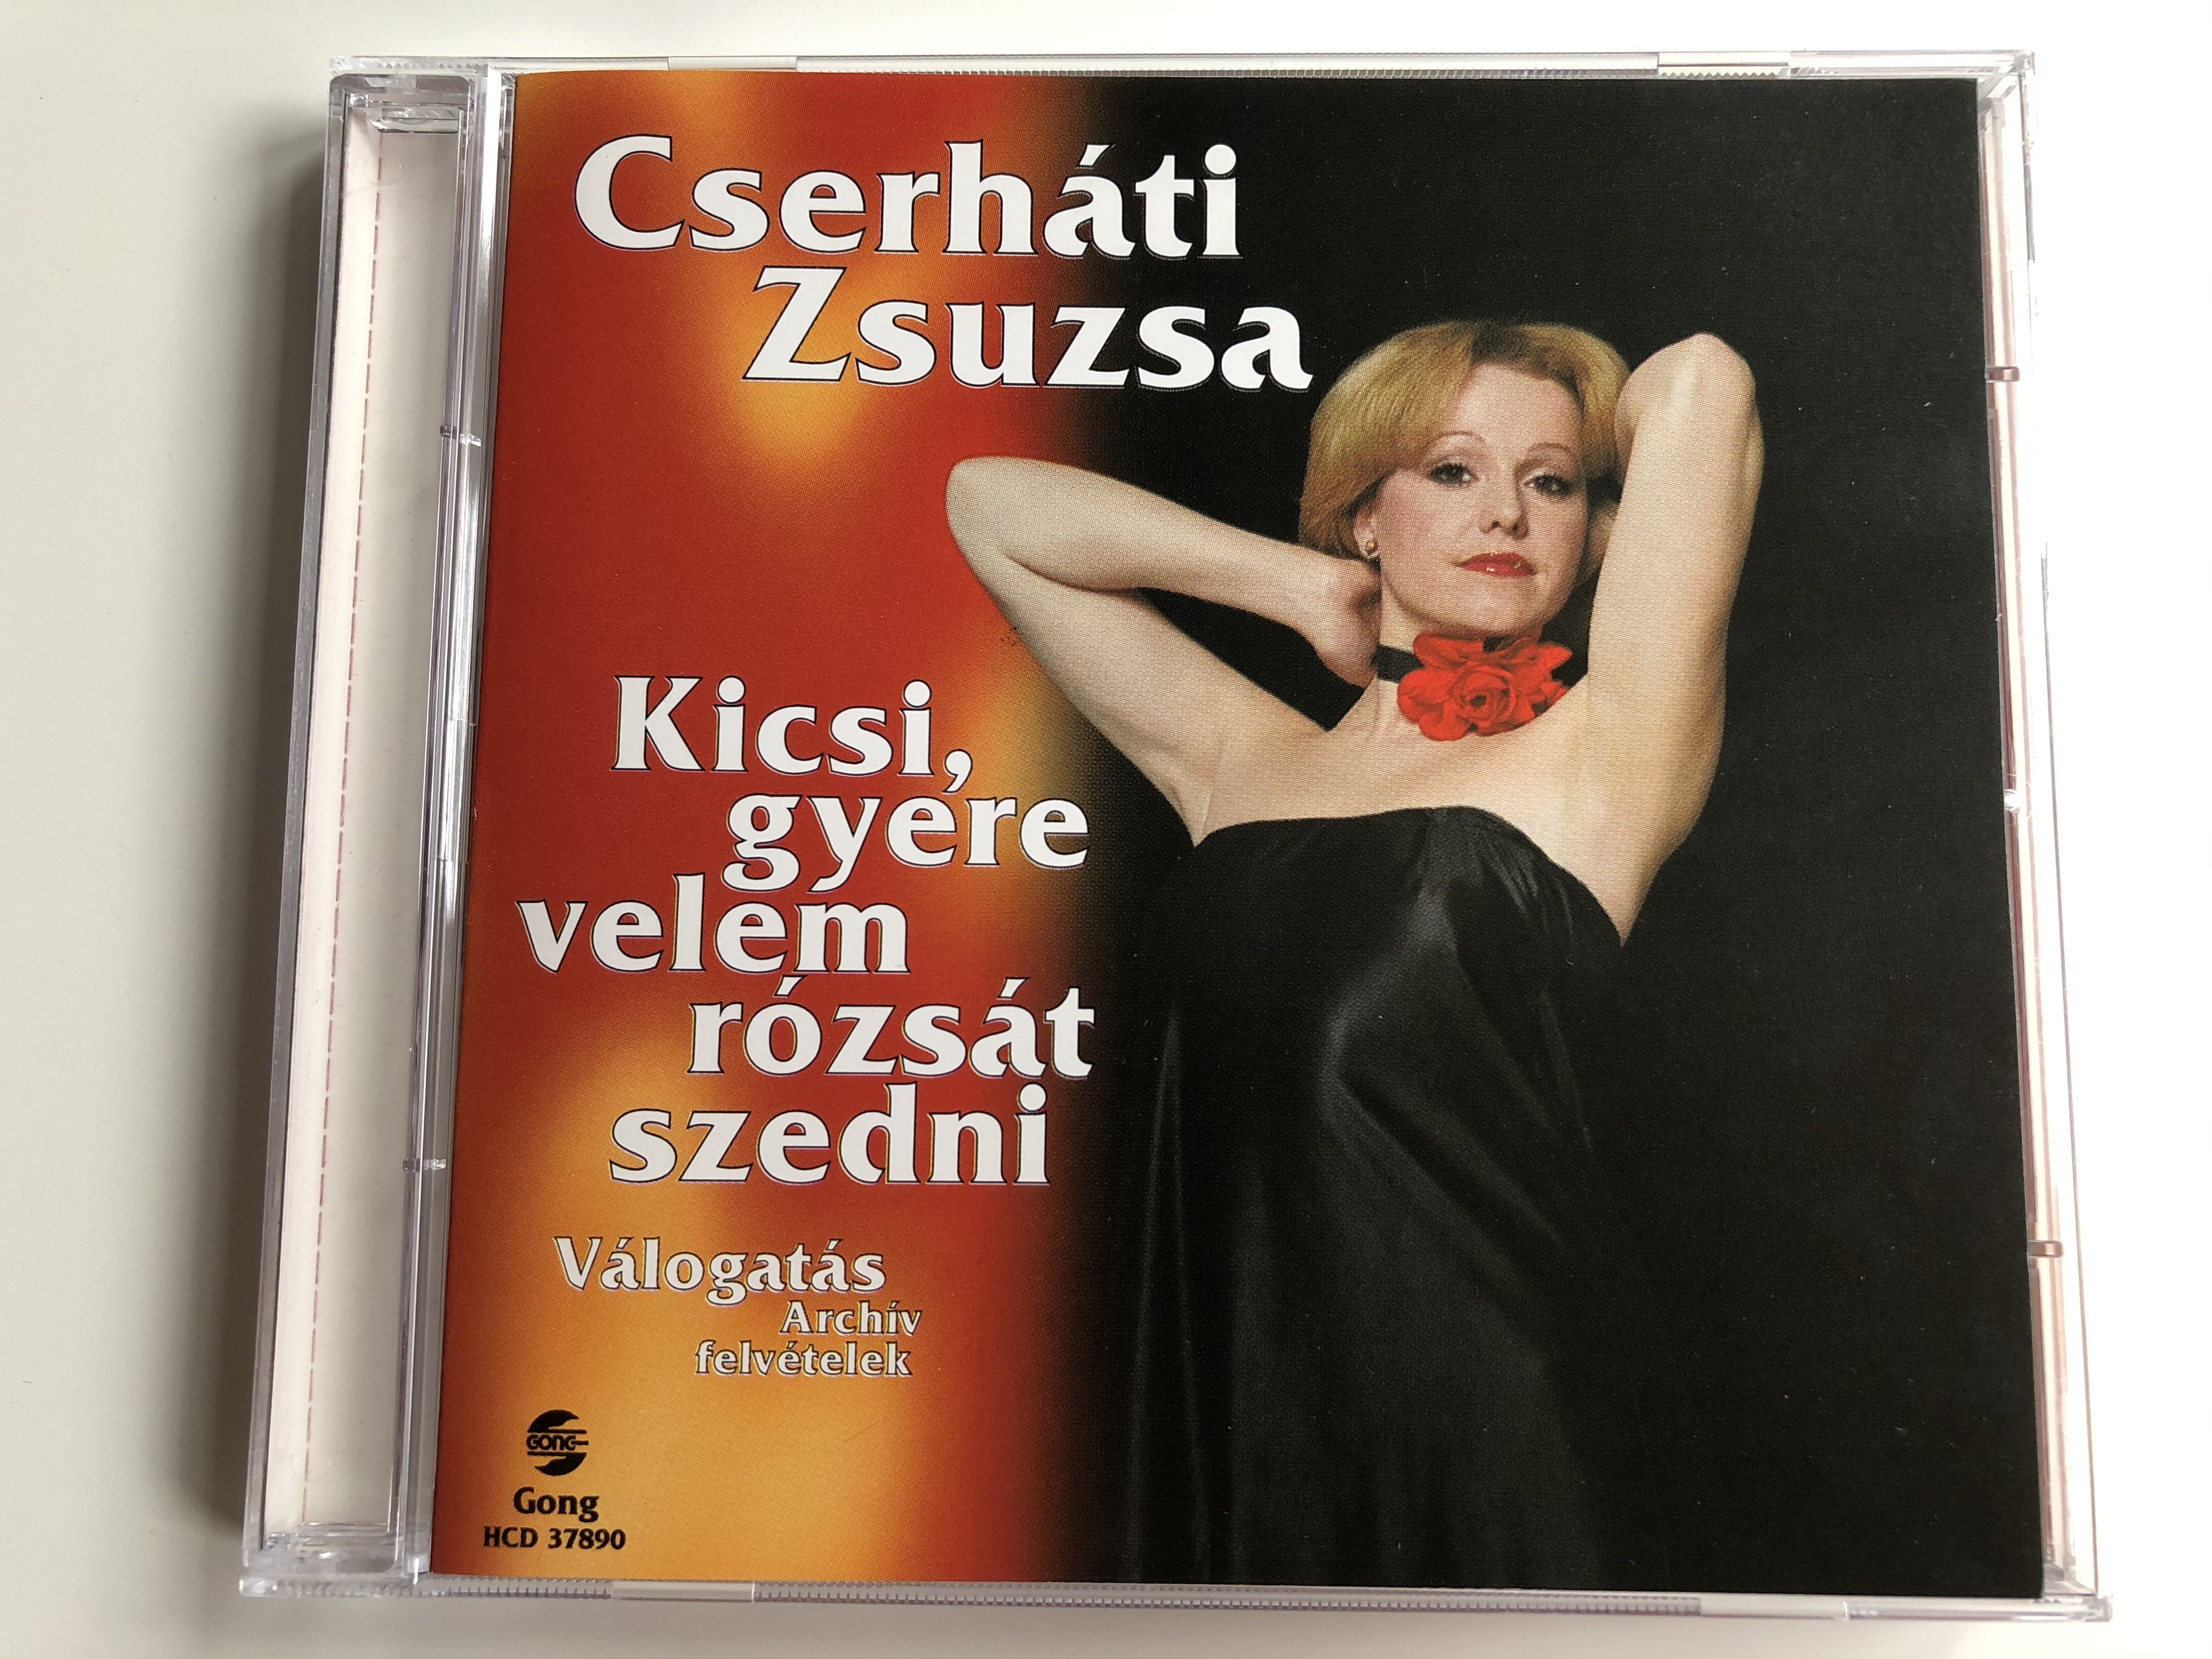 cserh-ti-zsuzsa-kicsi-gyere-velem-r-zs-t-szedni-valogatas-archiv-felvetelek-gong-audio-cd-1997-hcd-37890-1-.jpg